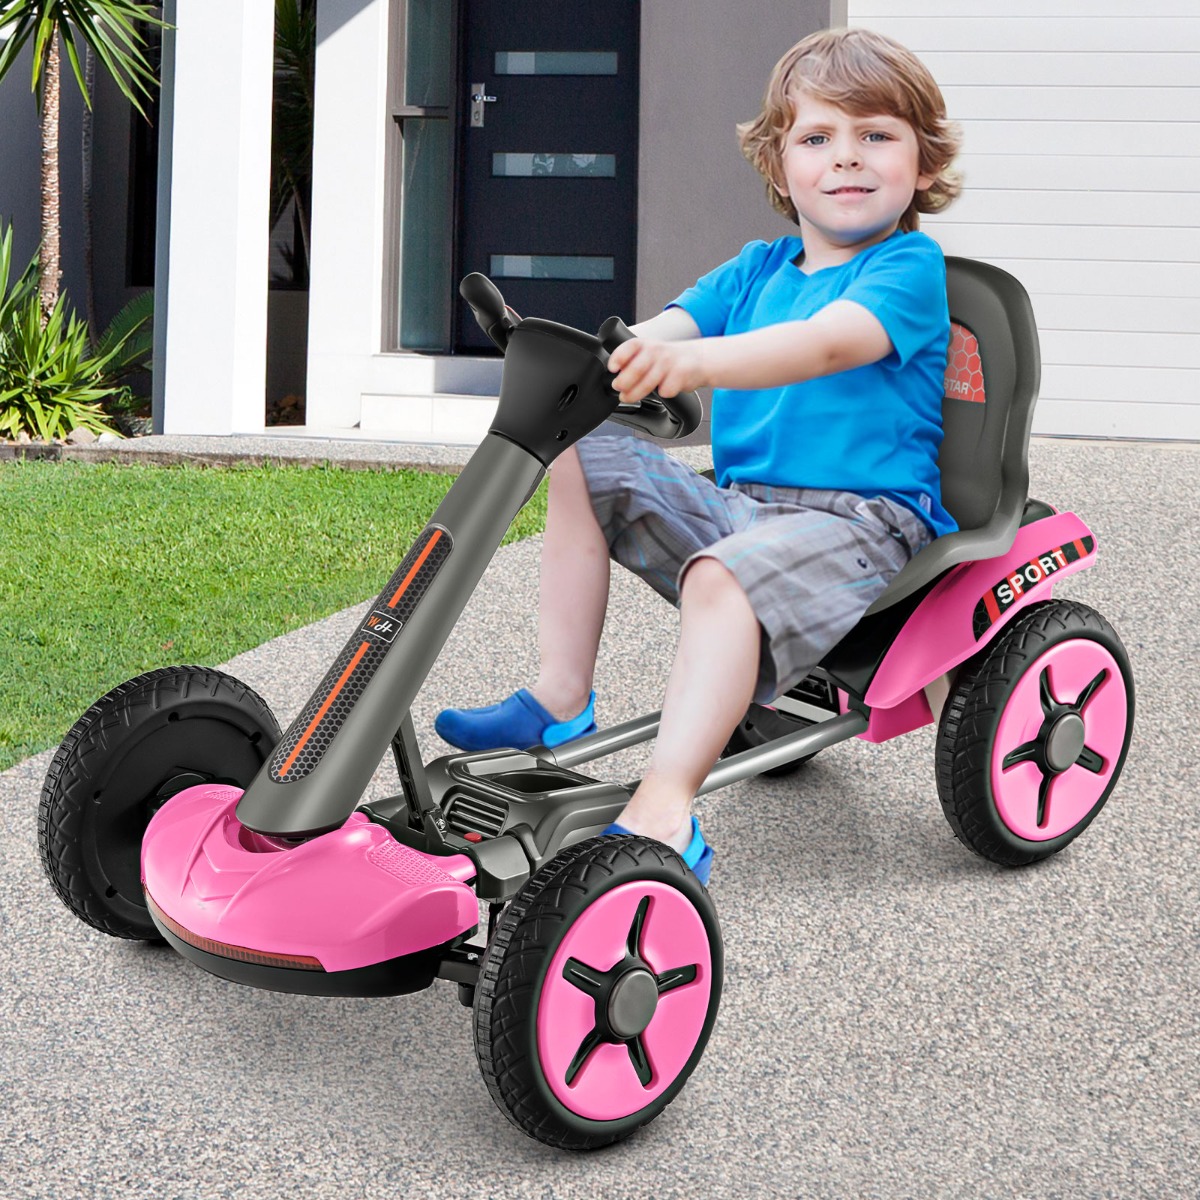 Costway Go Kart elettrico 12V per bambini, Go Kart pieghevole con volante e sedile regolabili pulsante di avvio Rosa